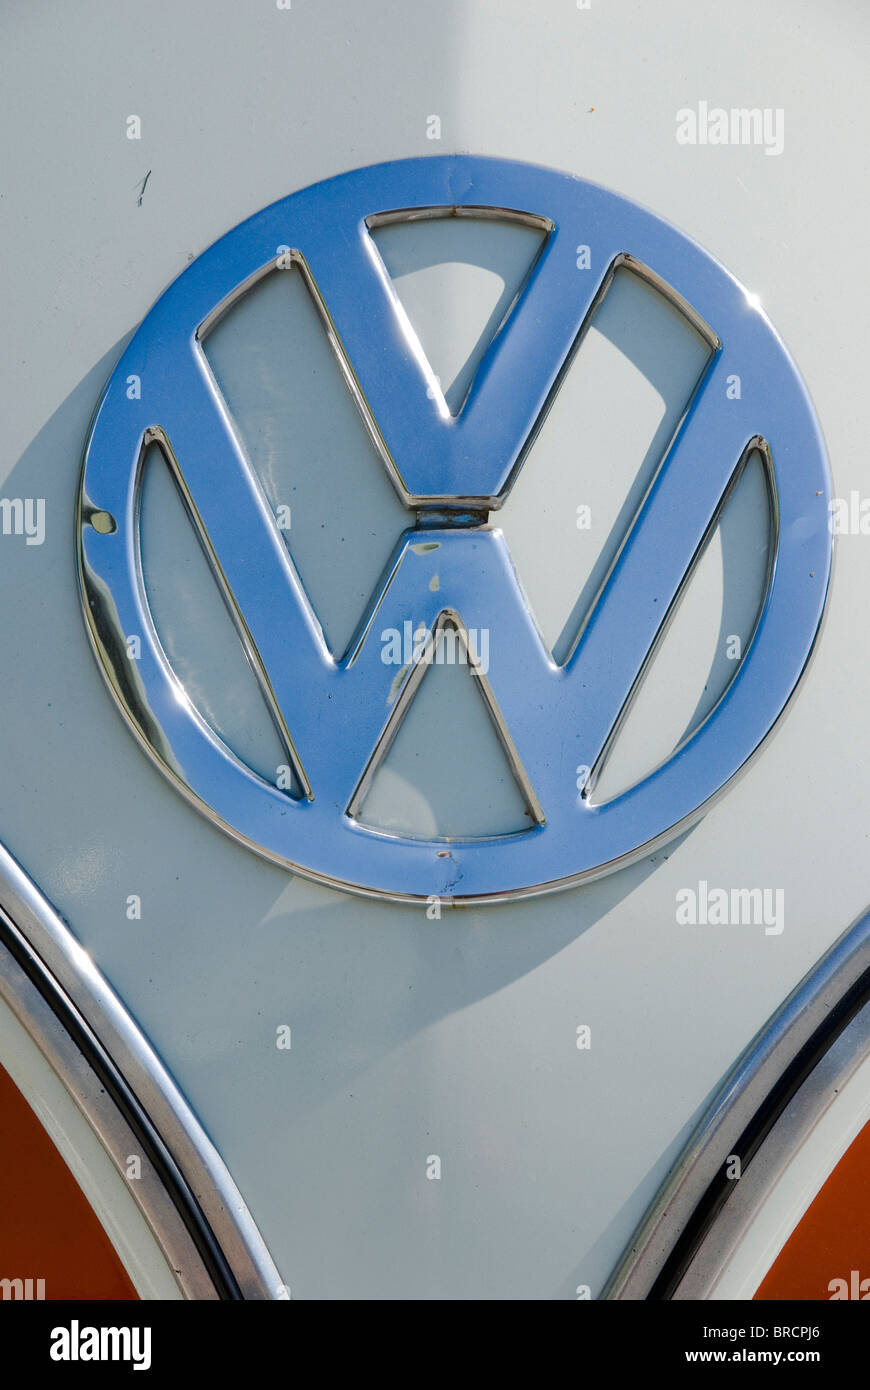 Volkswagen VW emblem on a classic VW Kombi van Stock Photo